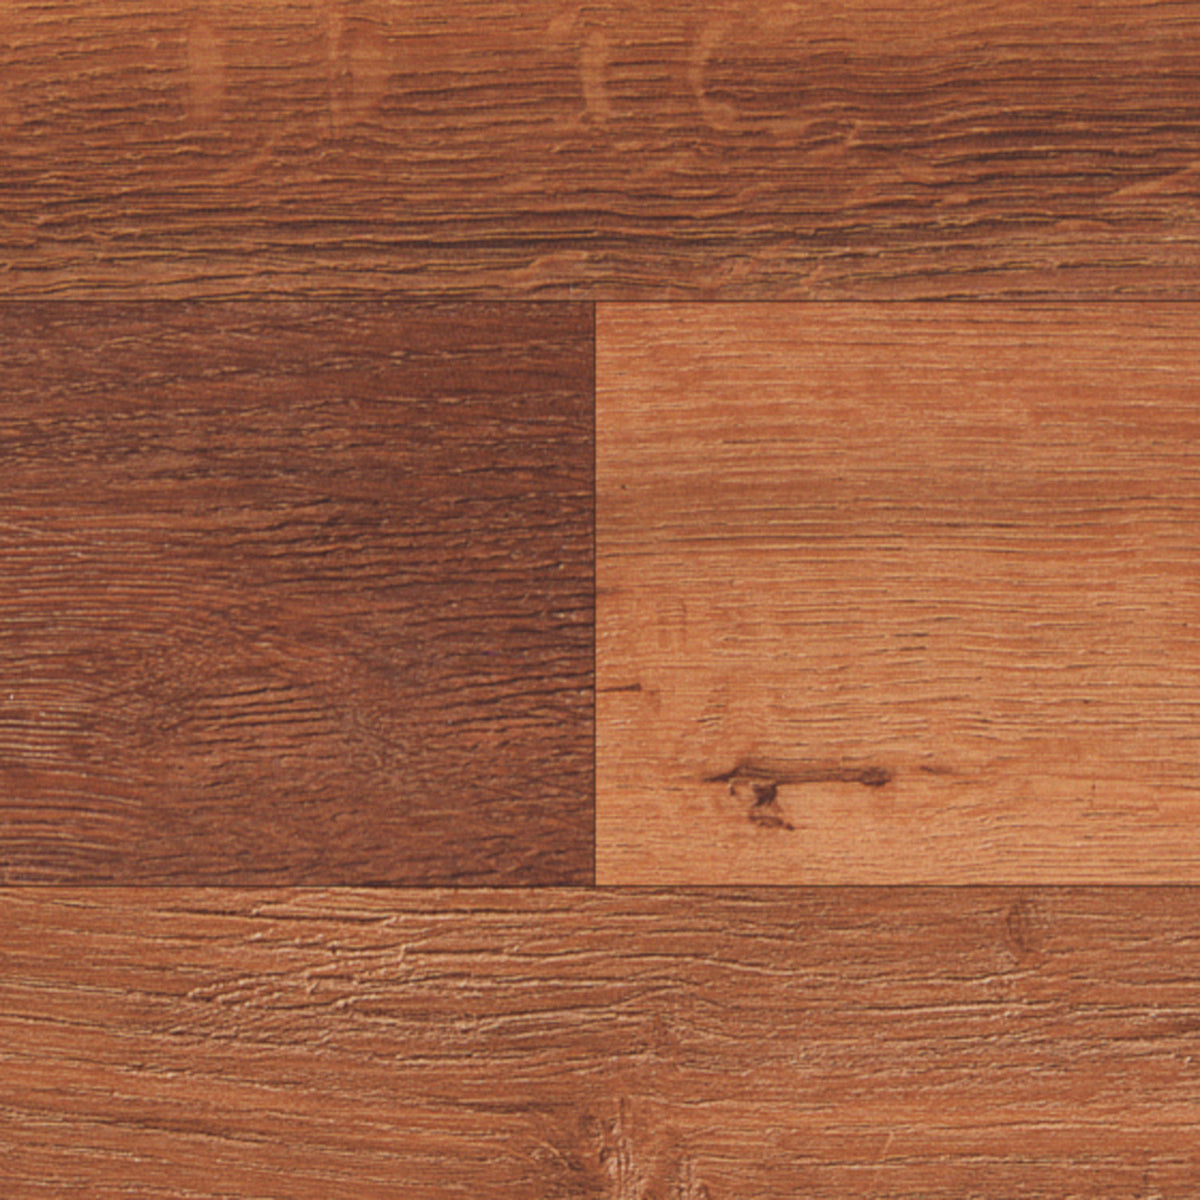 Karndean Da Vinci 3 in. x 36 in. Plank - Single Smoked Acacia